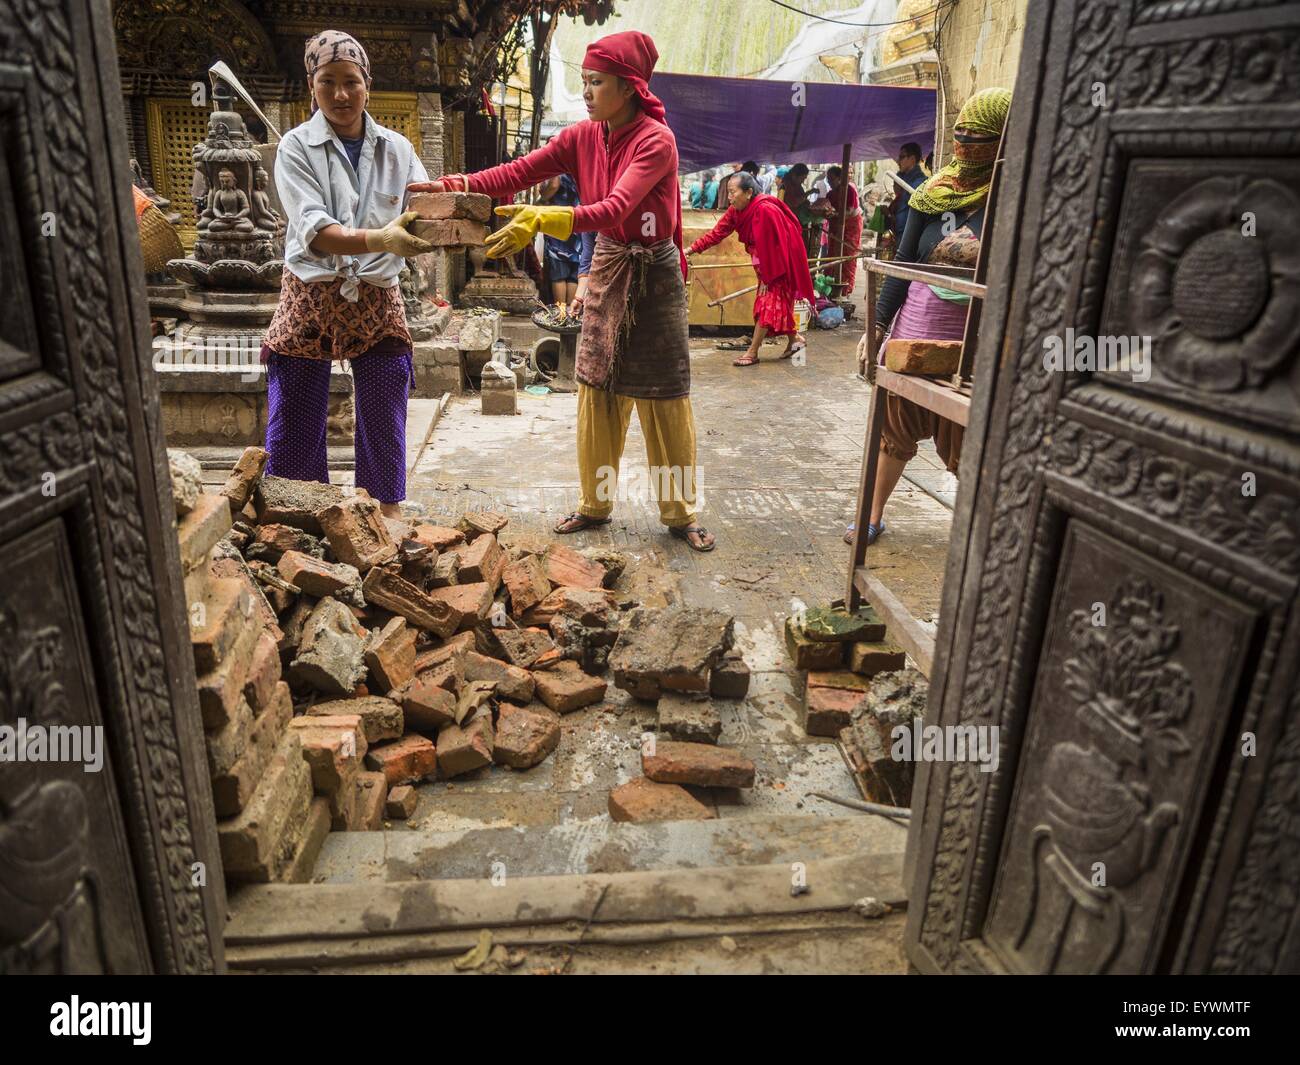 31. Juli 2015 - Kathmandu, Nepal - Arbeiter Ziegel von Swayambhunath, auch bekannt als die Affentempel zu erholen. Es ist ein Komplex von buddhistischen und hinduistischen Tempel in Kathmandu. Es wurde in Nepal Erdbeben stark beschädigt. Das Erdbeben in Nepal am 25. April 2015, (auch bekannt als der Gorkha Erdbeben) mehr als 9.000 Menschen getötet und verletzt mehr als 23.000. Es hatte eine Stärke von 7,8. Das Epizentrum lag östlich der Stadtteil Lamjung, und seine Hypozentrum lag in einer Tiefe von ca. 15Â Kilometer (9.3Â Meile). Es war die schlimmste Naturkatastrophe seit 1934 Nepal Nepal Streikrecht '' "Bihar Erdbeben. Der ea Stockfoto